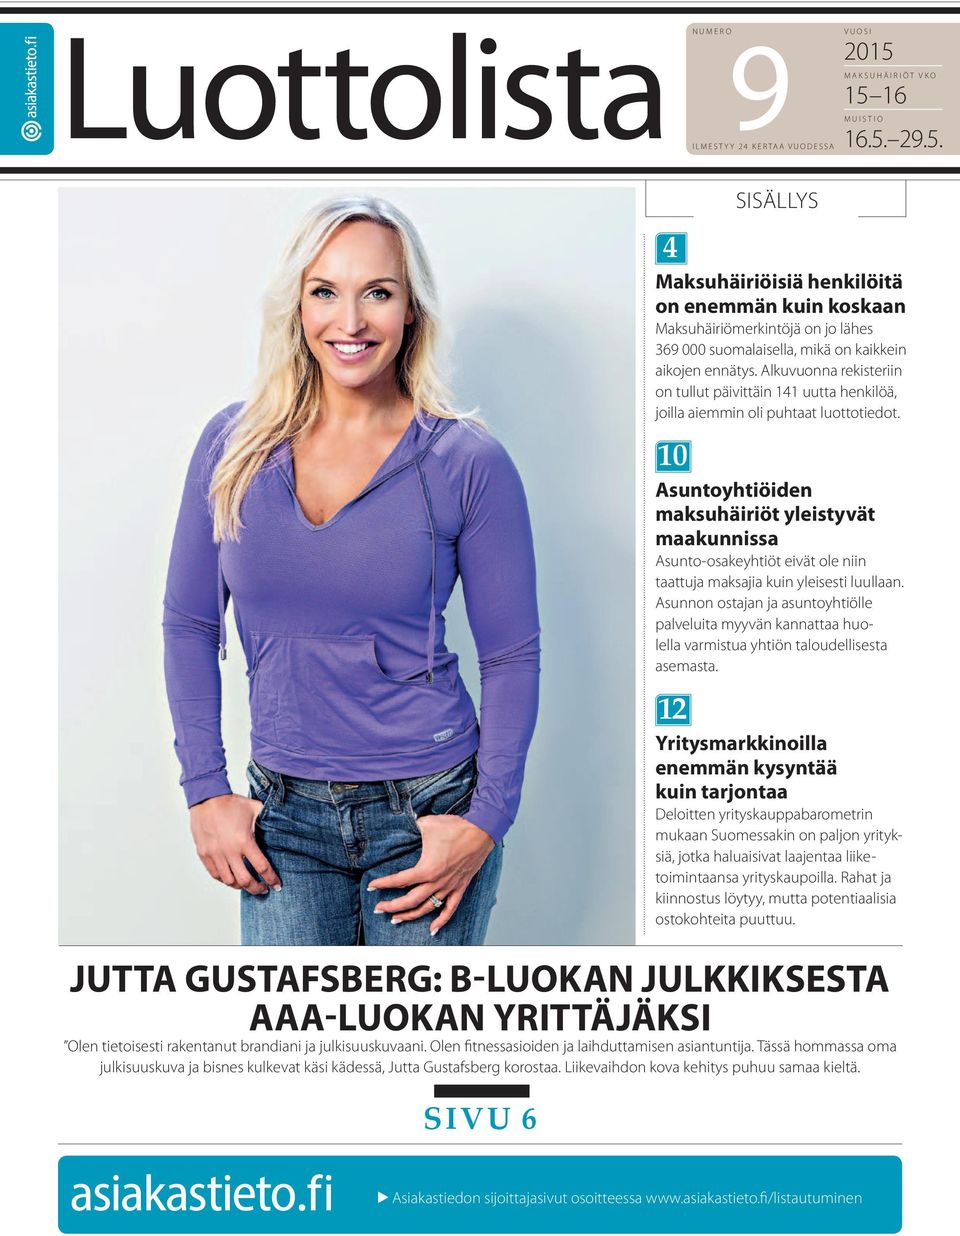 SIVU 6 4 Maksuhäiriöisiä henkilöitä on enemmän kuin koskaan Maksuhäiriömerkintöjä on jo lähes 369 000 suomalaisella, mikä on kaikkein aikojen ennätys.